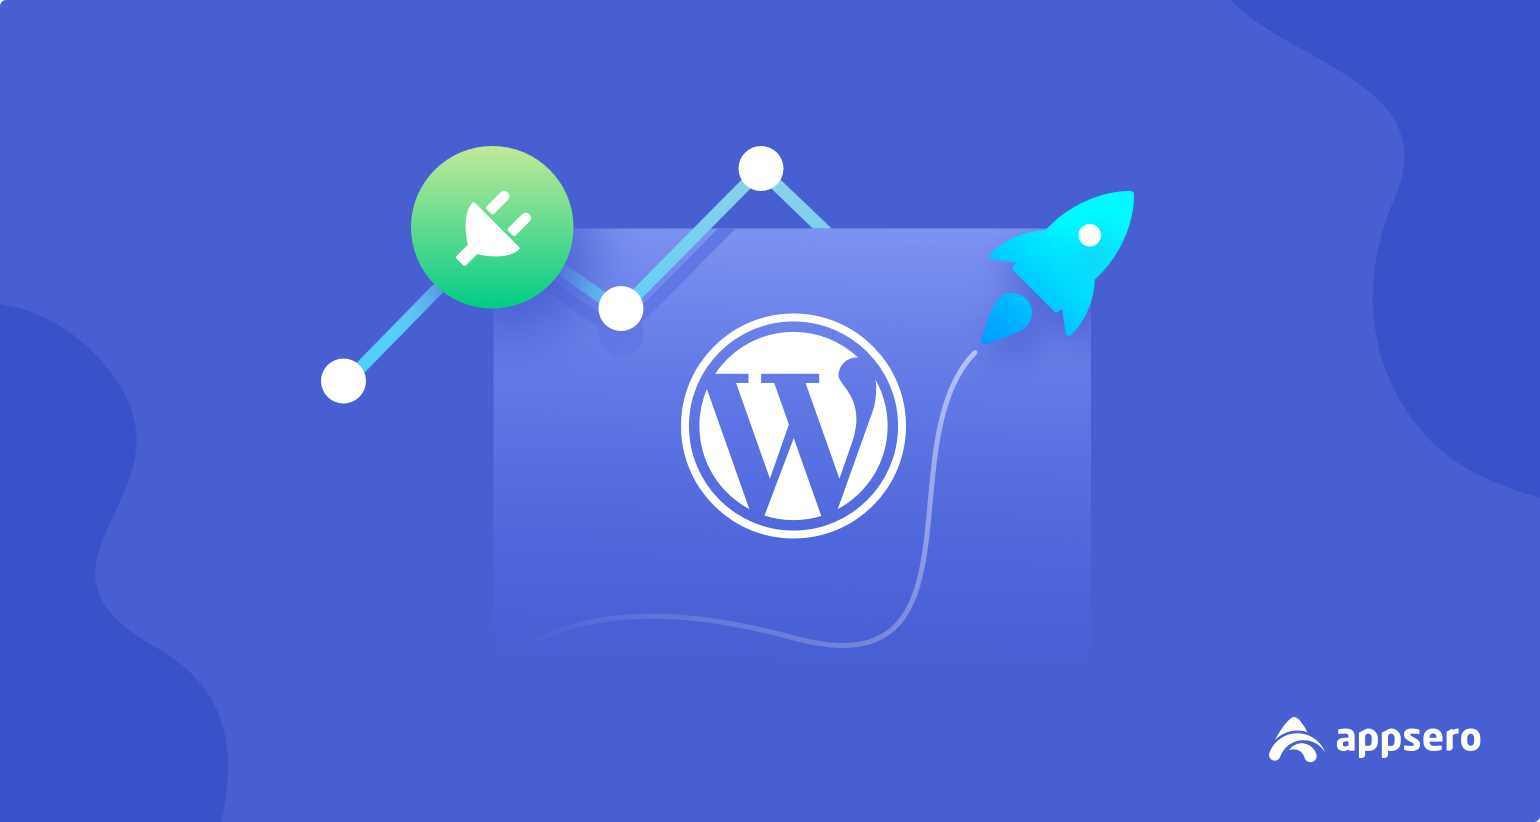 Features of WordPress